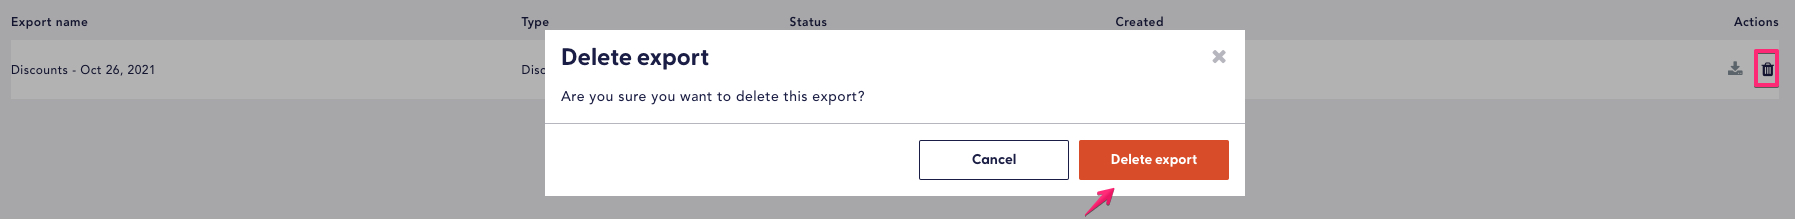 delete export popup